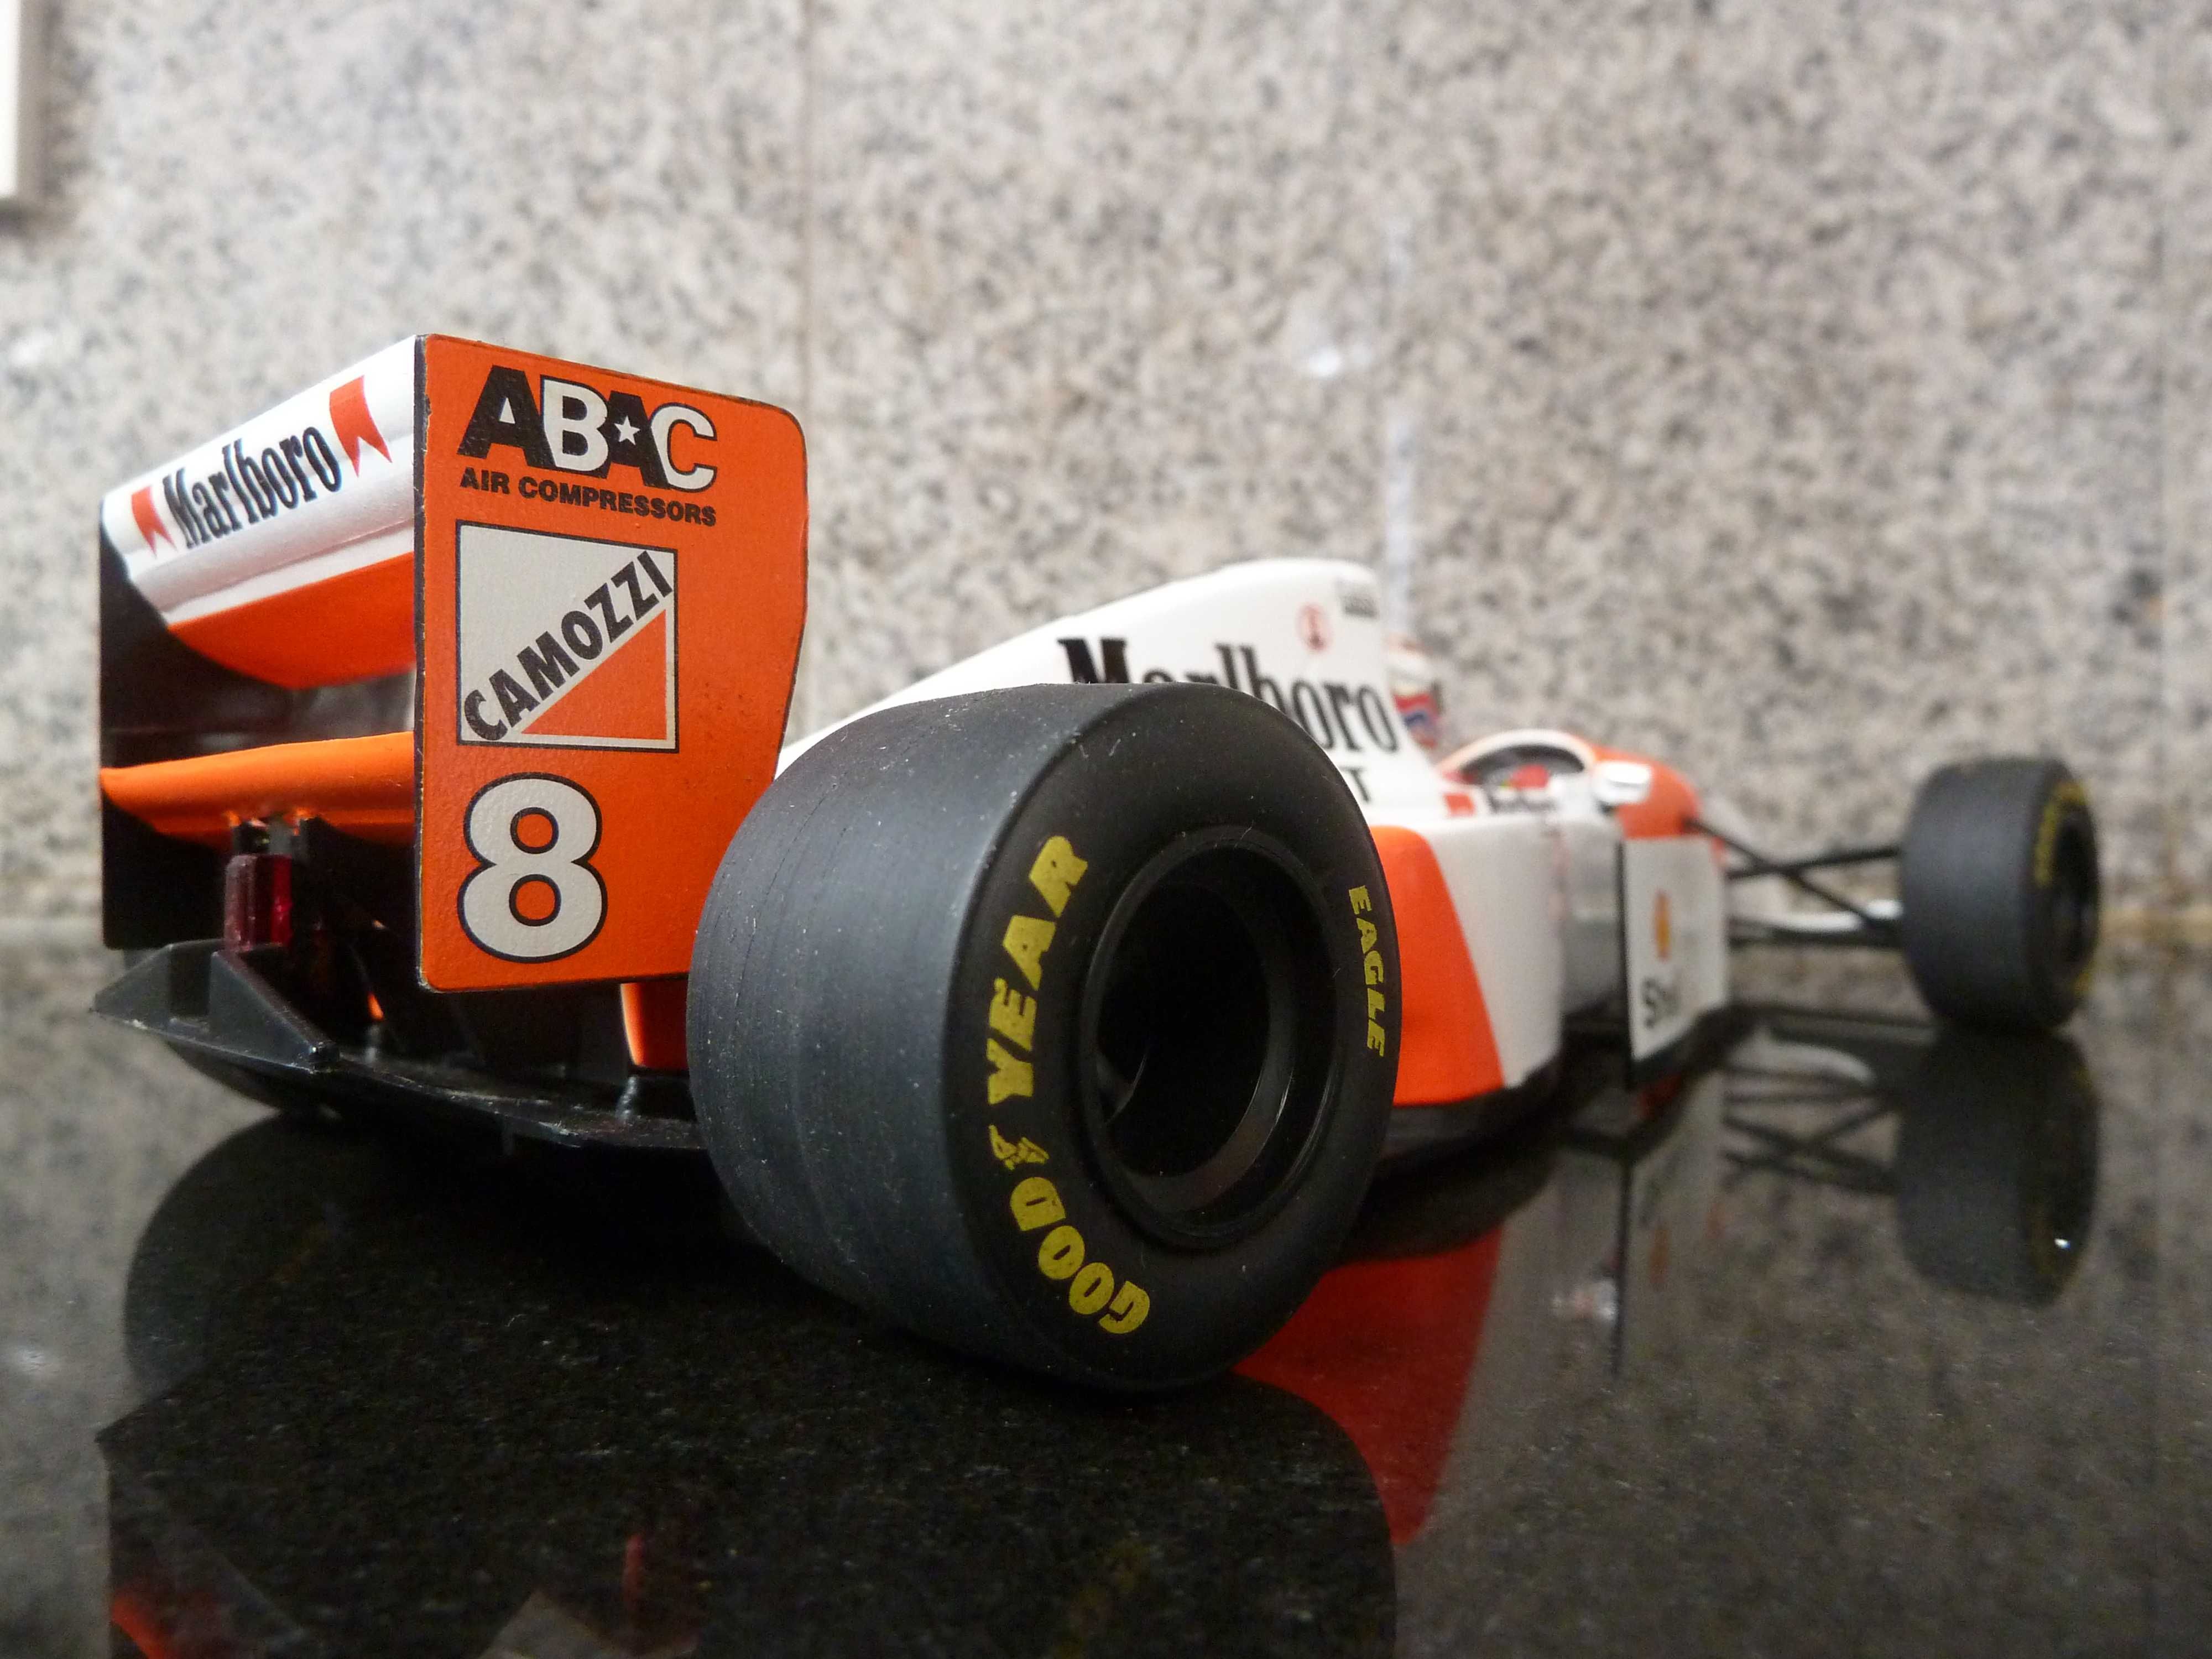 1:18 Minichamps, McLaren MP4/9, Brundle, Marlboro AutoArt